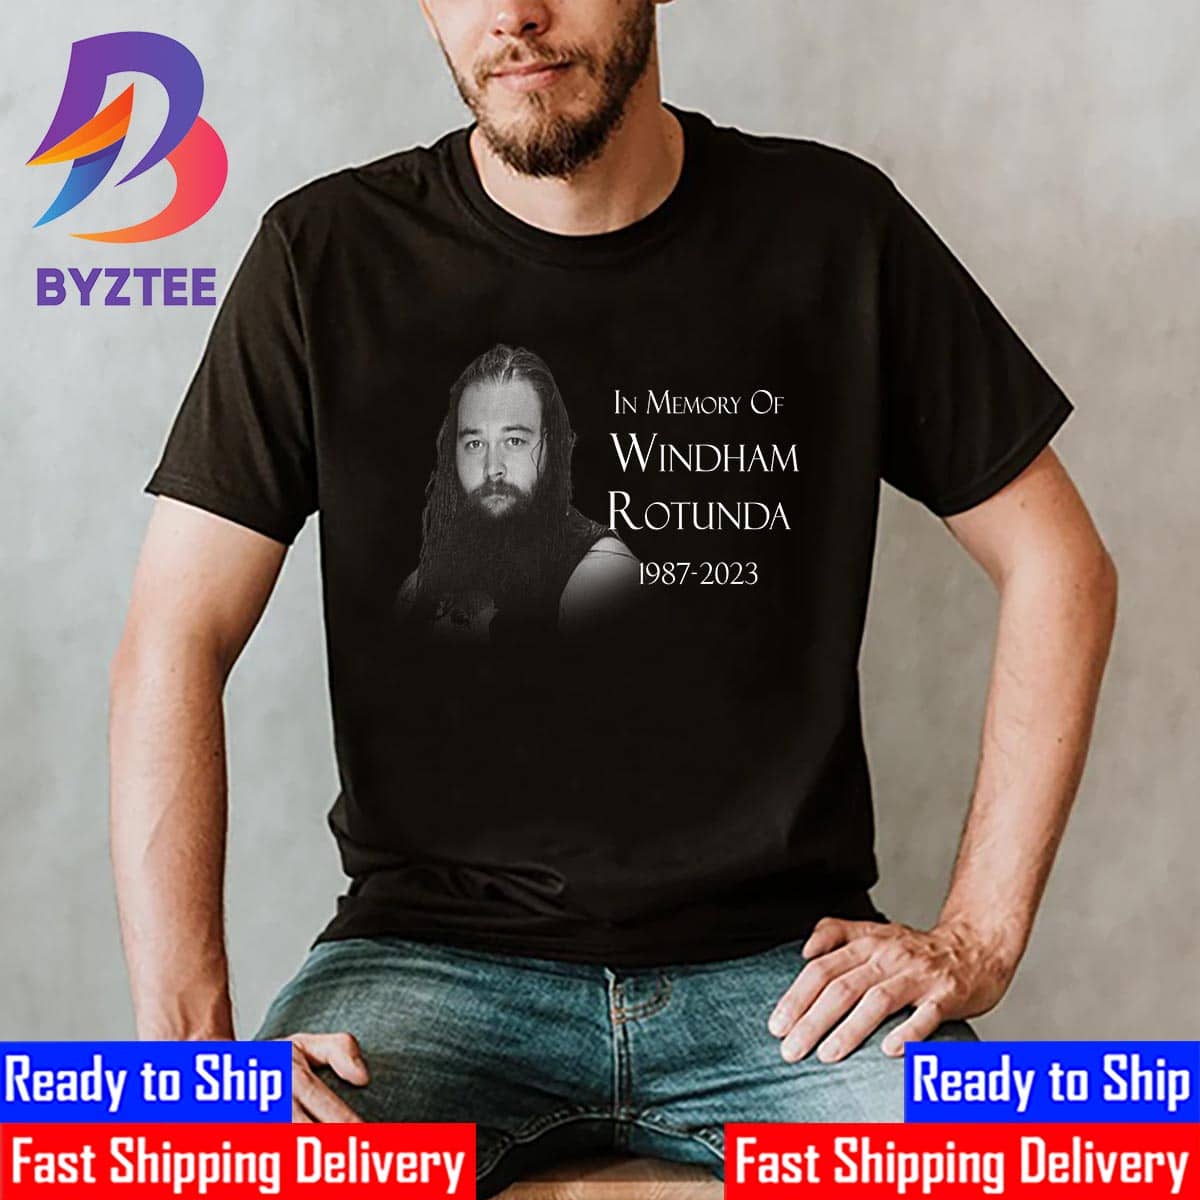 Bray wyatt R.I.P 2023 - Bray Wyatt 2023 - T-Shirt